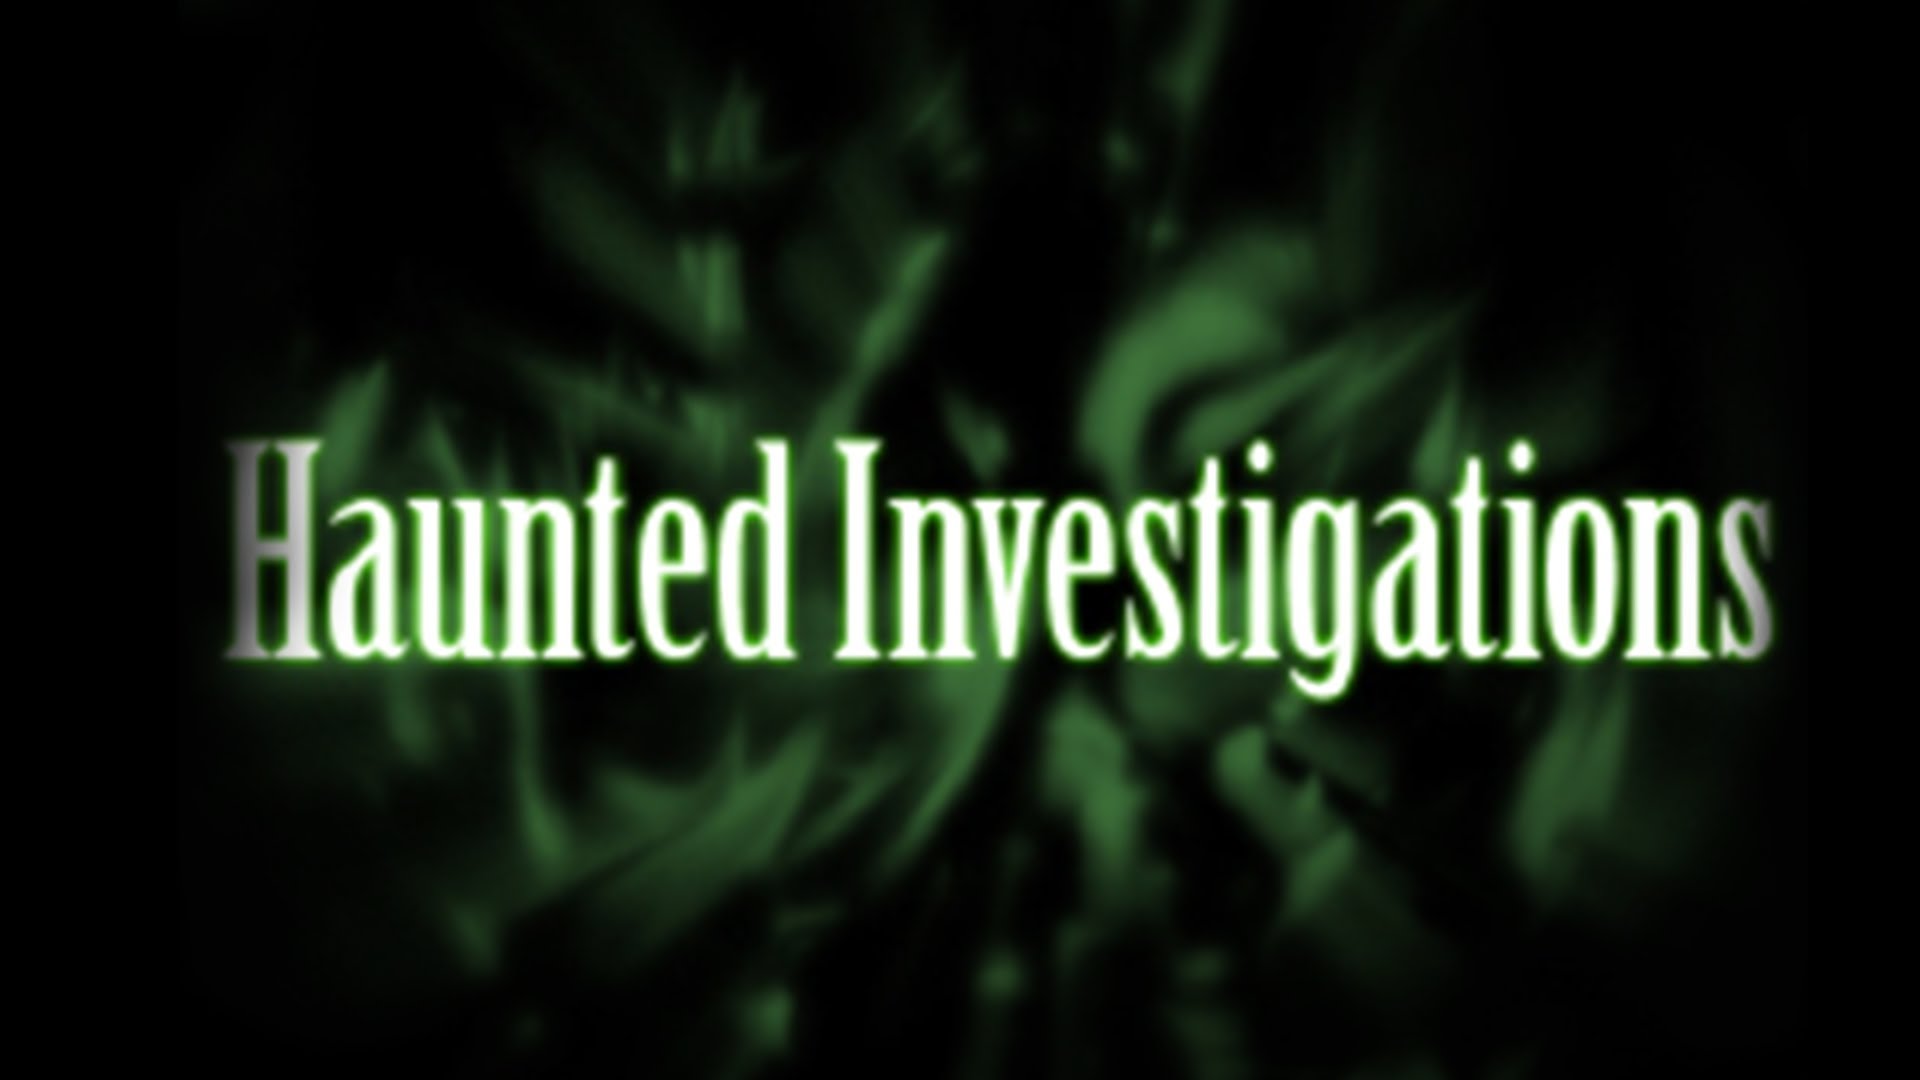 Haunted investigations